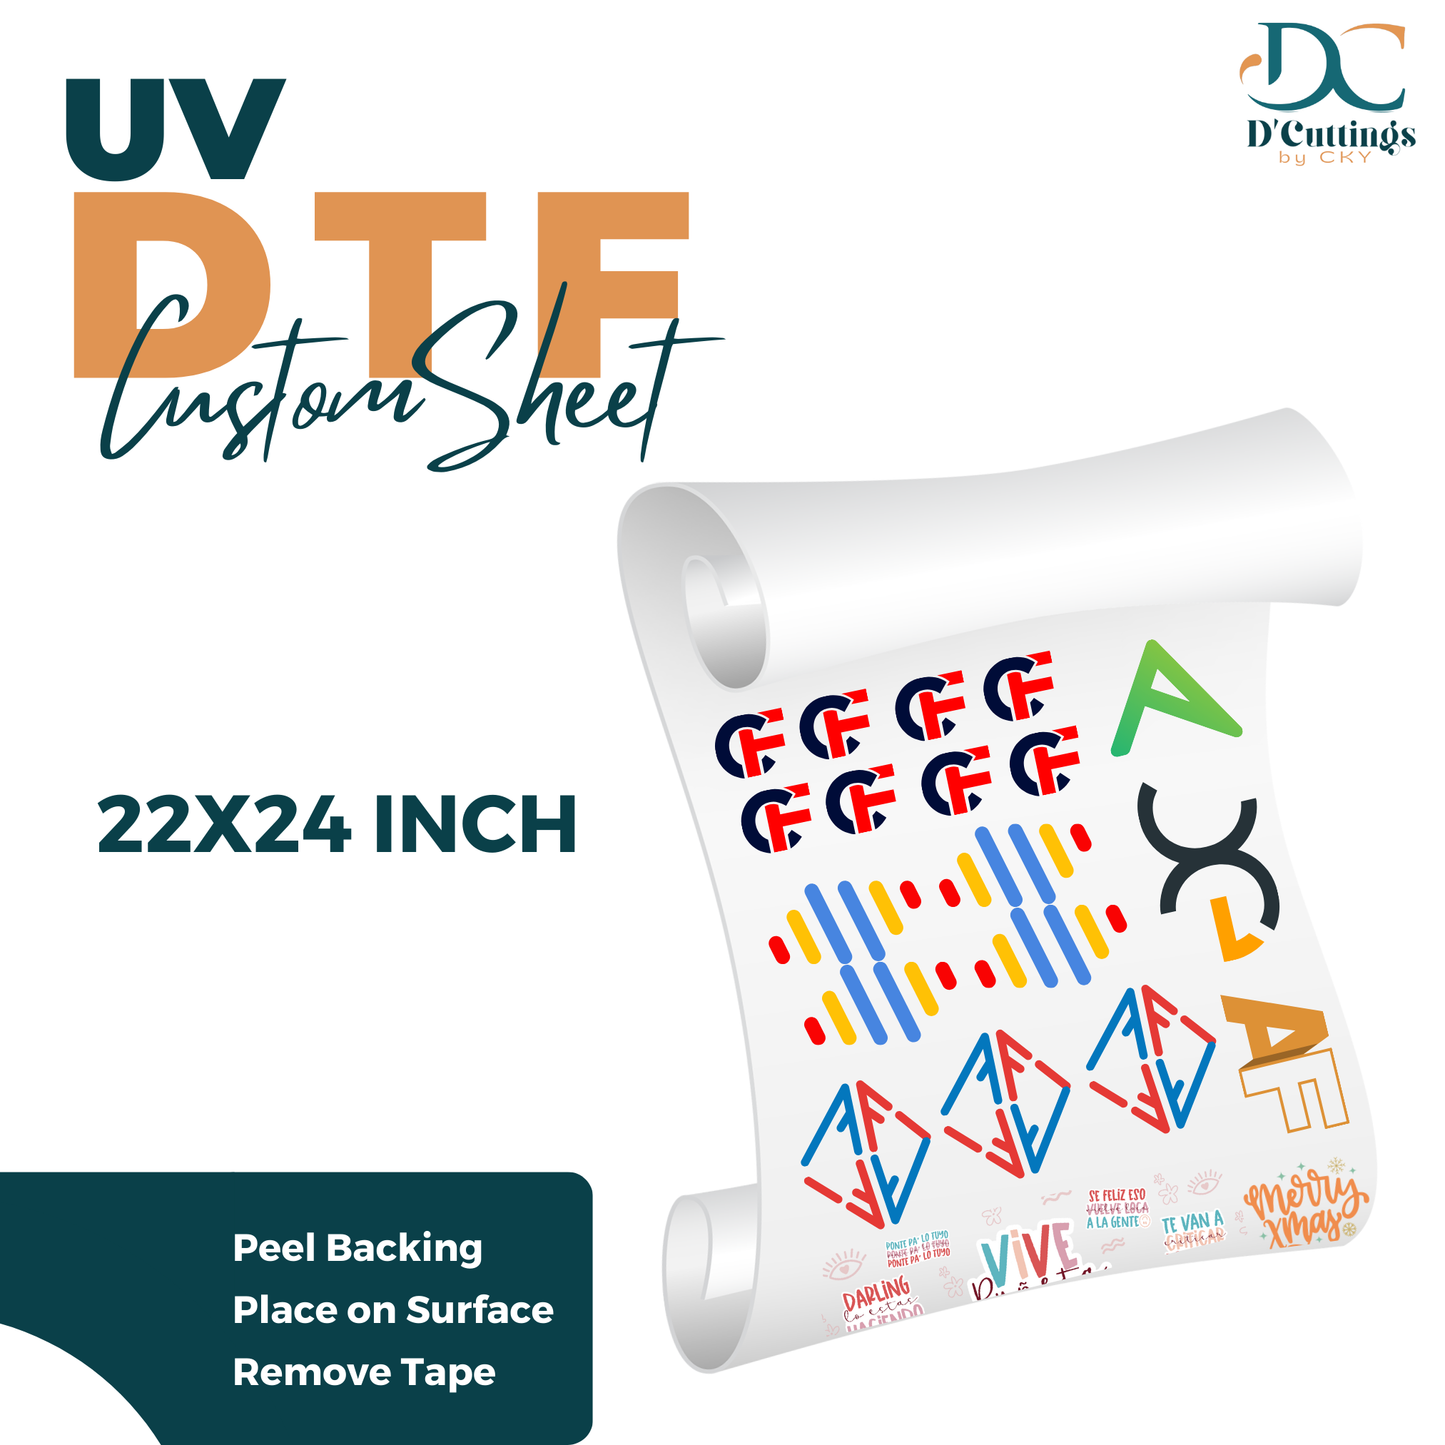 UV DTF Custom Sheet 22x24